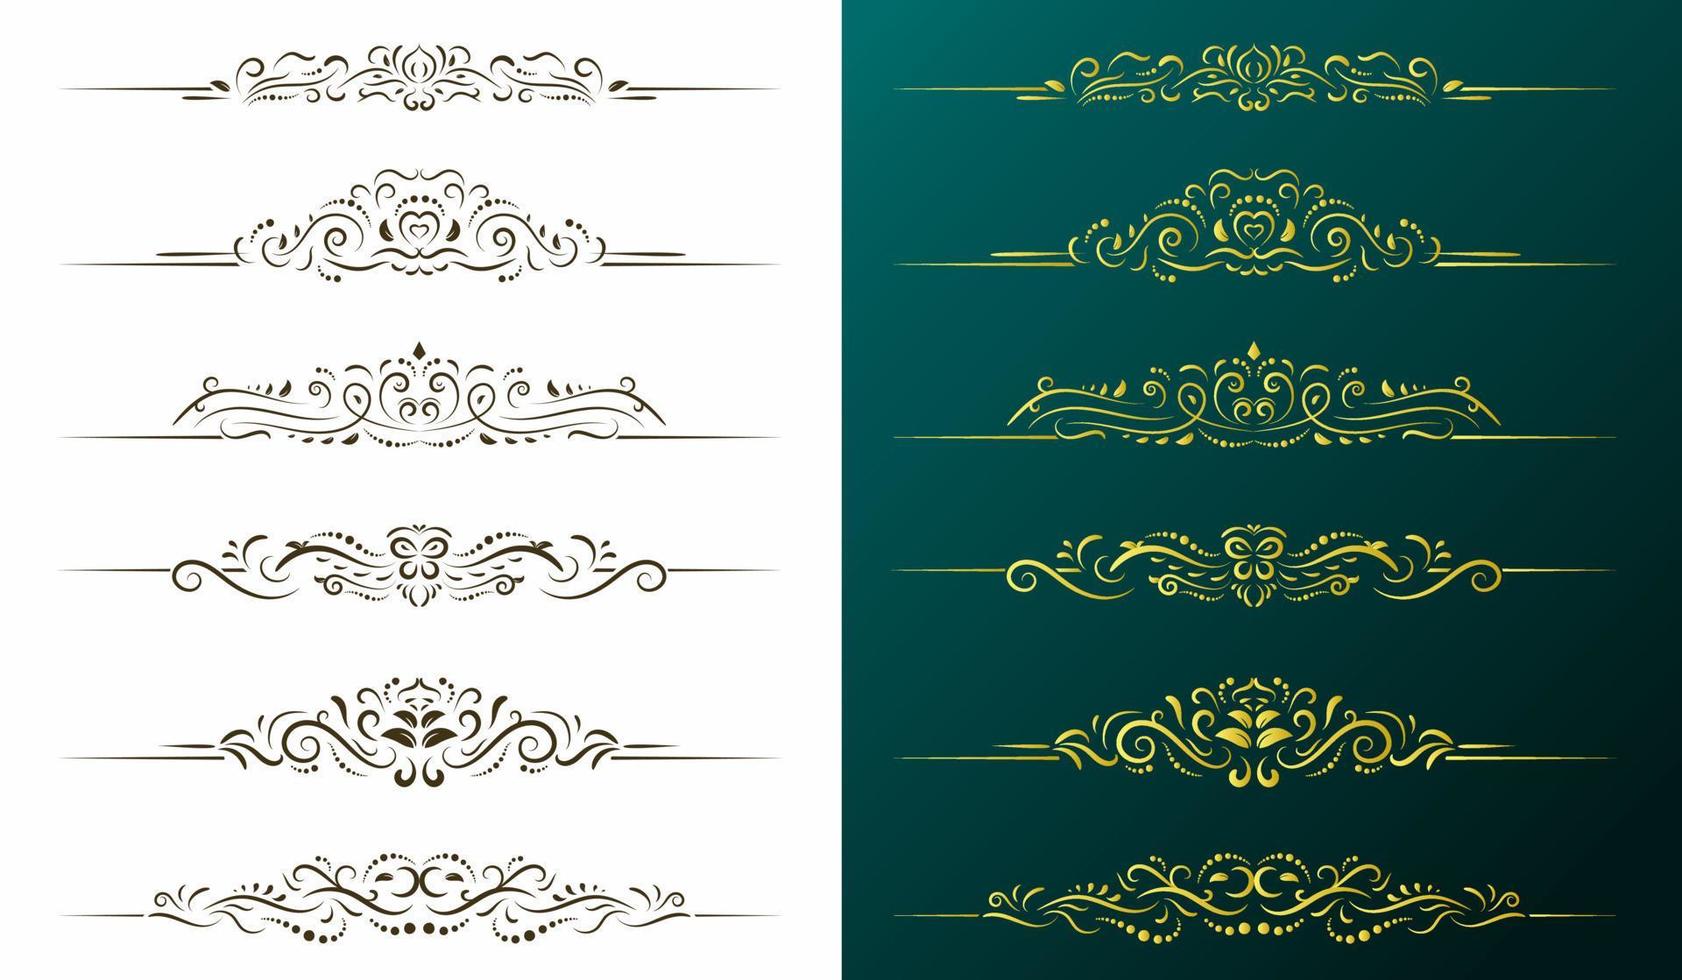 Calligraphic design elements, page dividers with thai ornament, vintage divider ornament page, classic floral border set, ornate vector illustration.